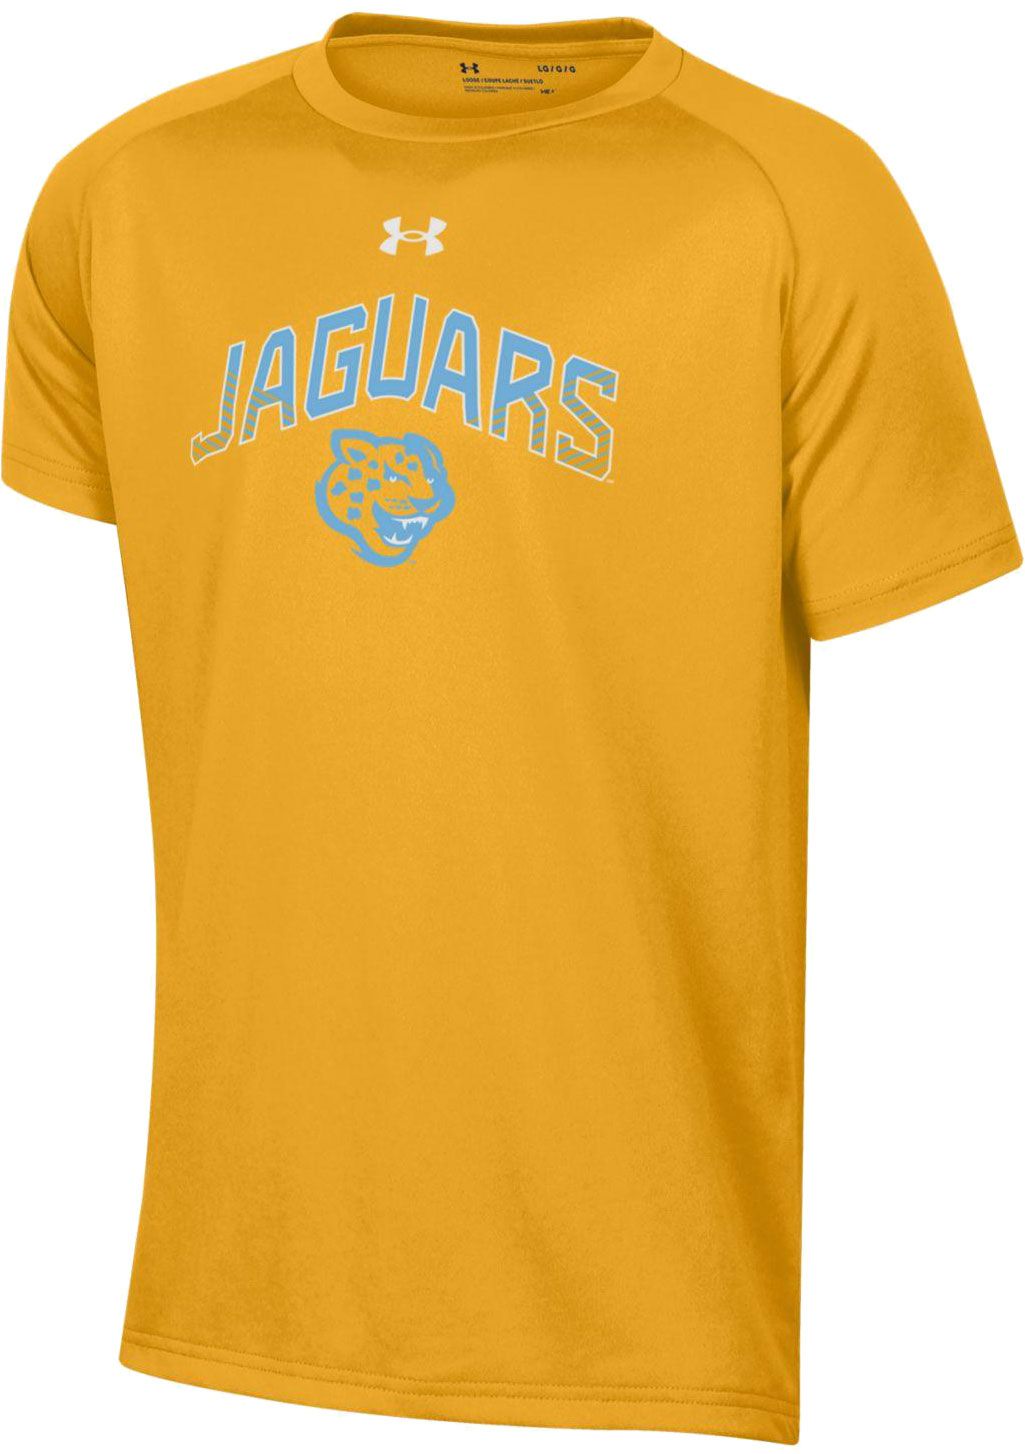 jaguars gold shirt